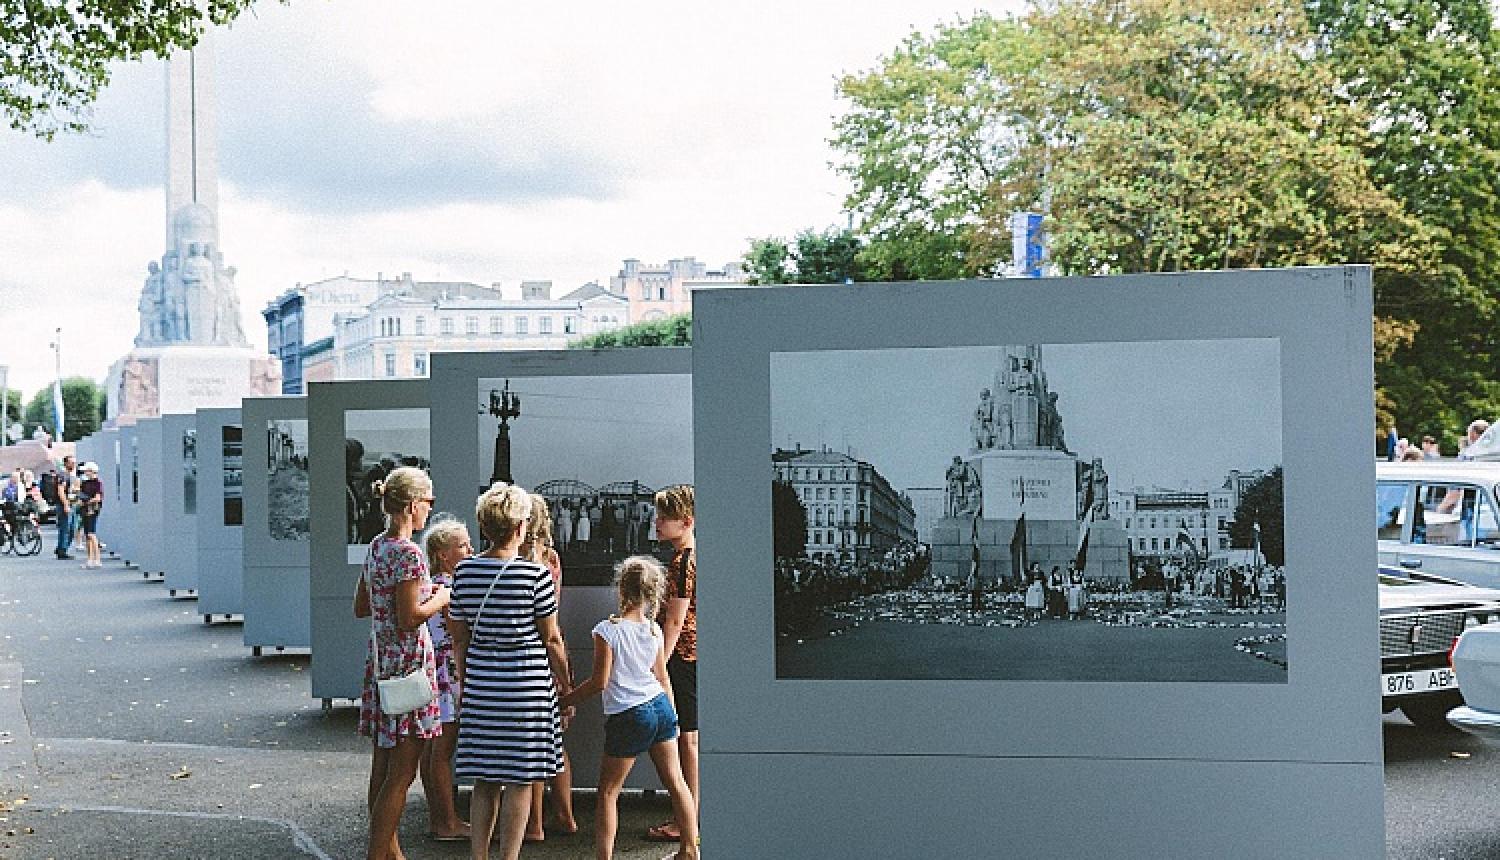 Brīvības laukumā skatāma lielformāta fotoizstāde Baltijas ceļa trīsdesmitgadei